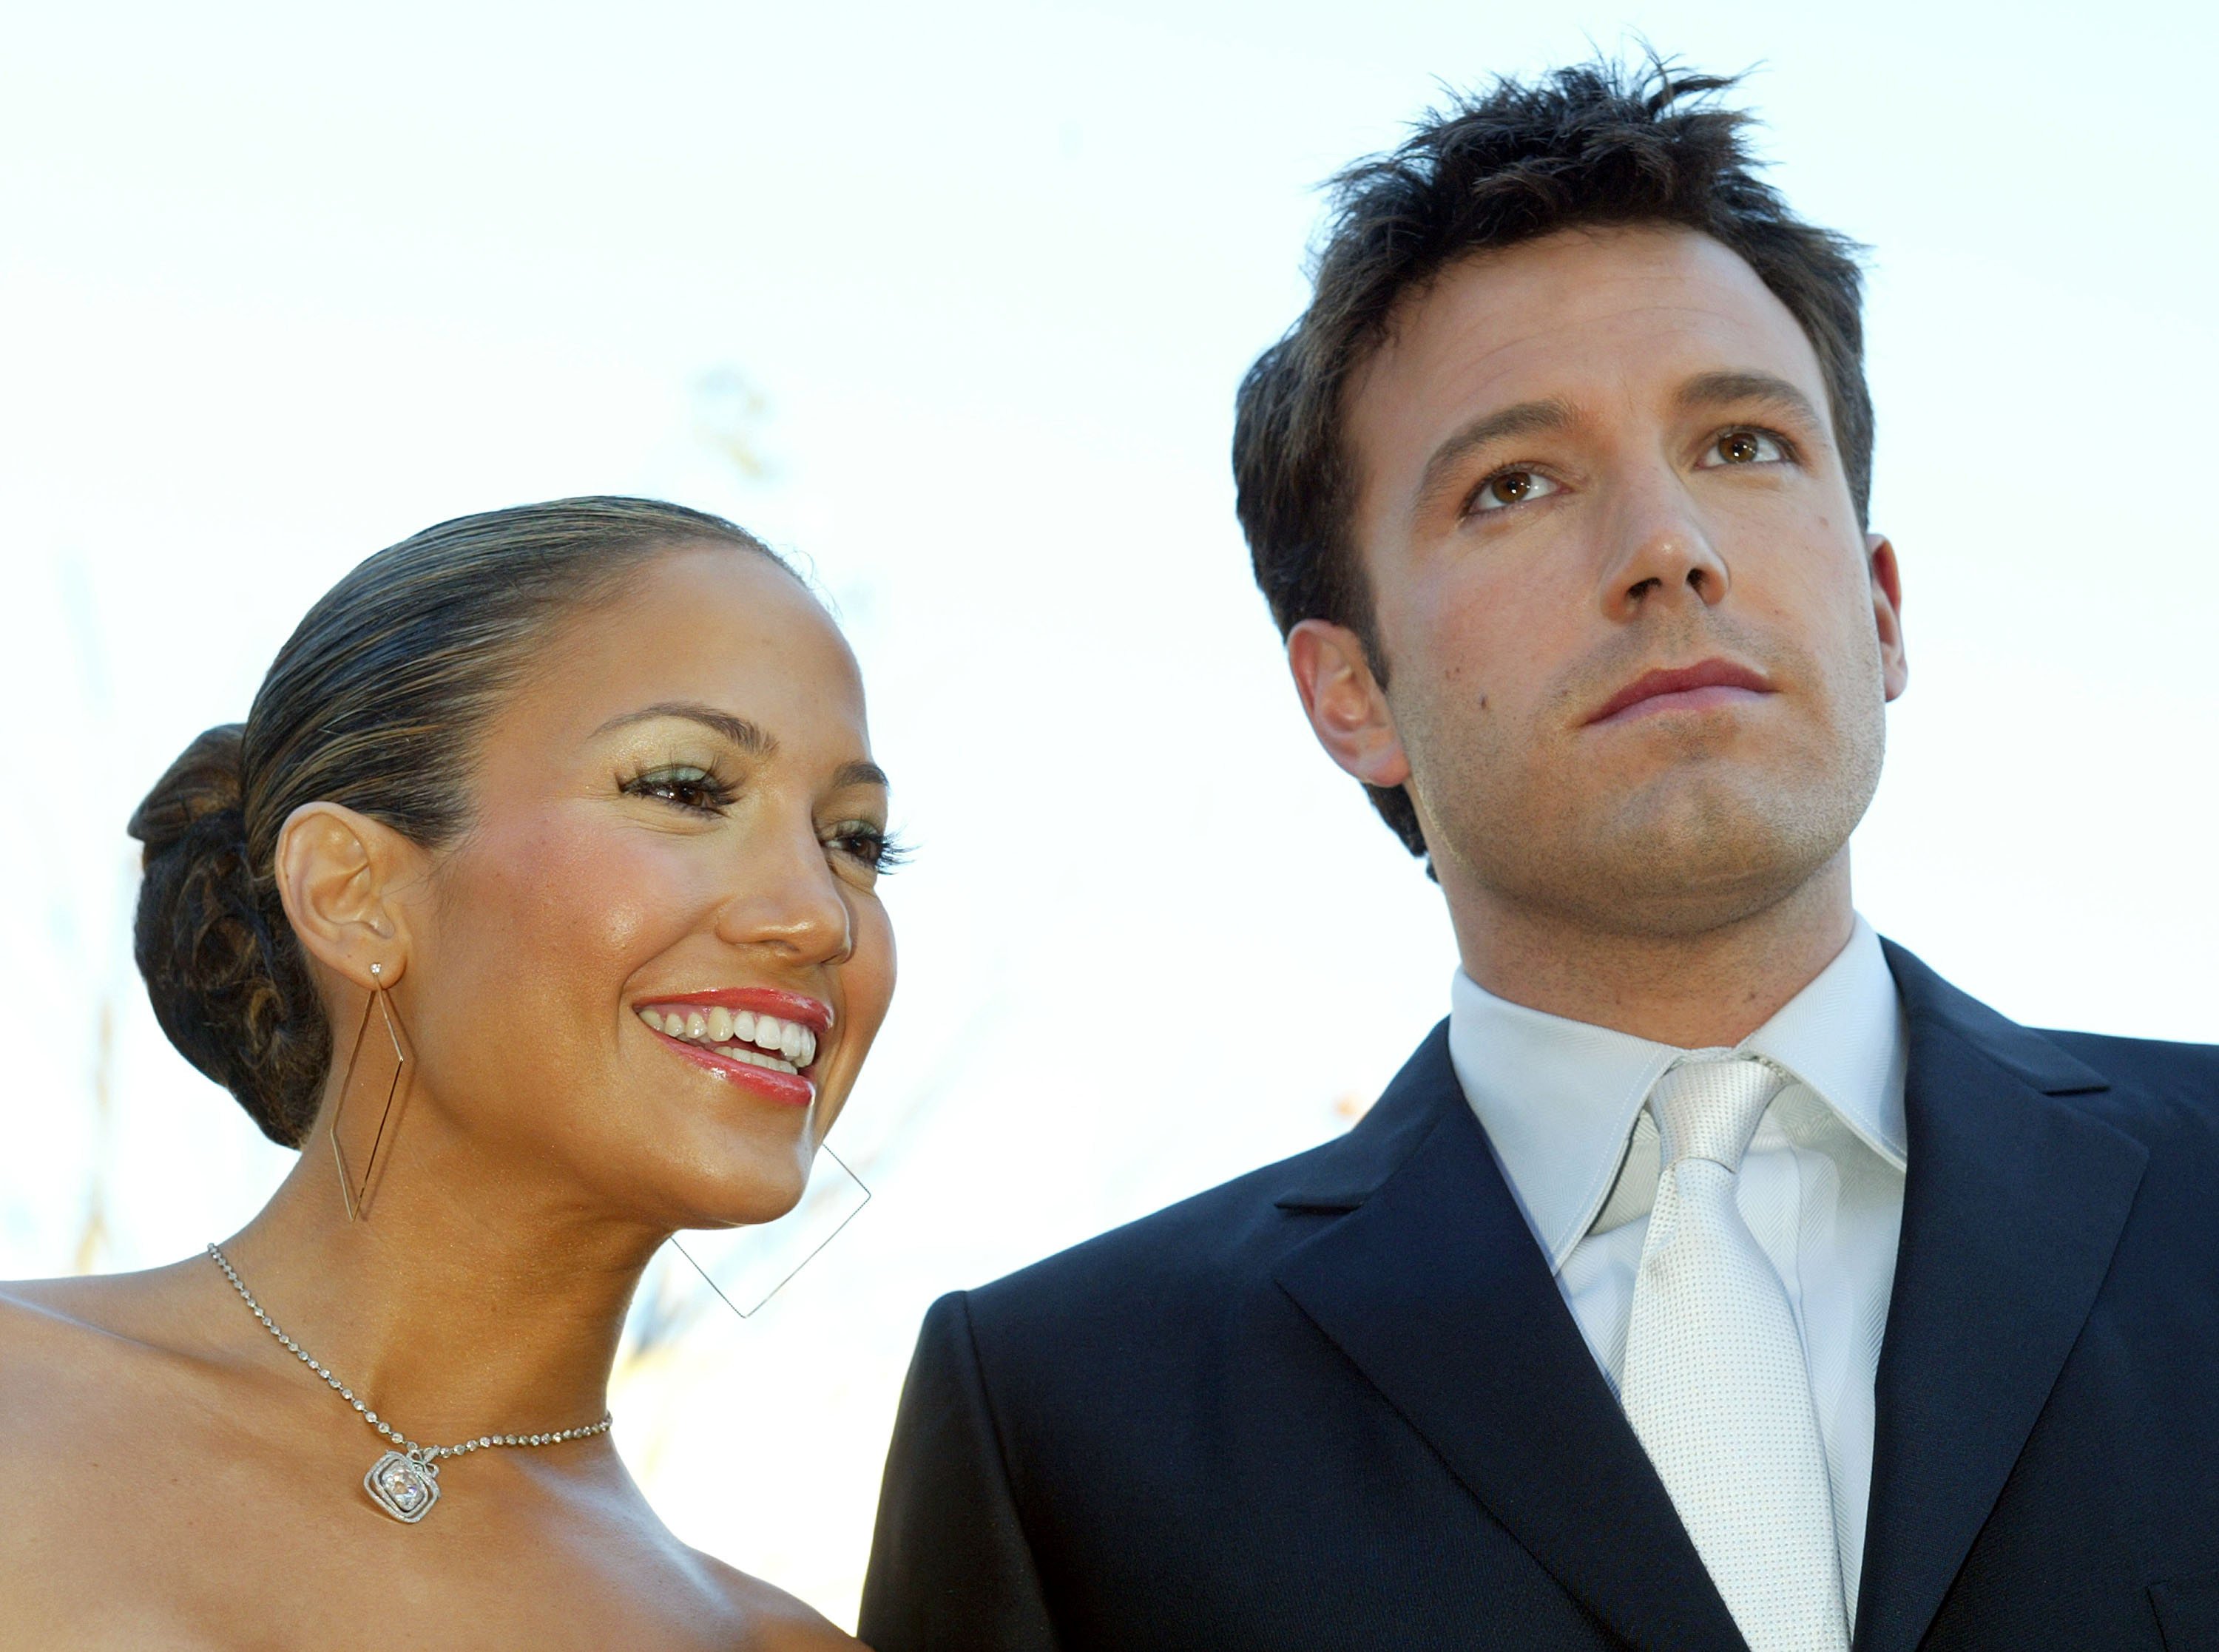 <p>20 години по-късно Дженифър Лопес и Бен Афлек са сгодени отново! Актрисата показа красивия си годежен пръстен с огромен зелен диамант. Вижте как изглеждаше двойката при първия си годеж през 2002-2003 г. и сега.&nbsp;</p>

<p>Бен и Джей Ло през 2002 - 2003 г.</p>